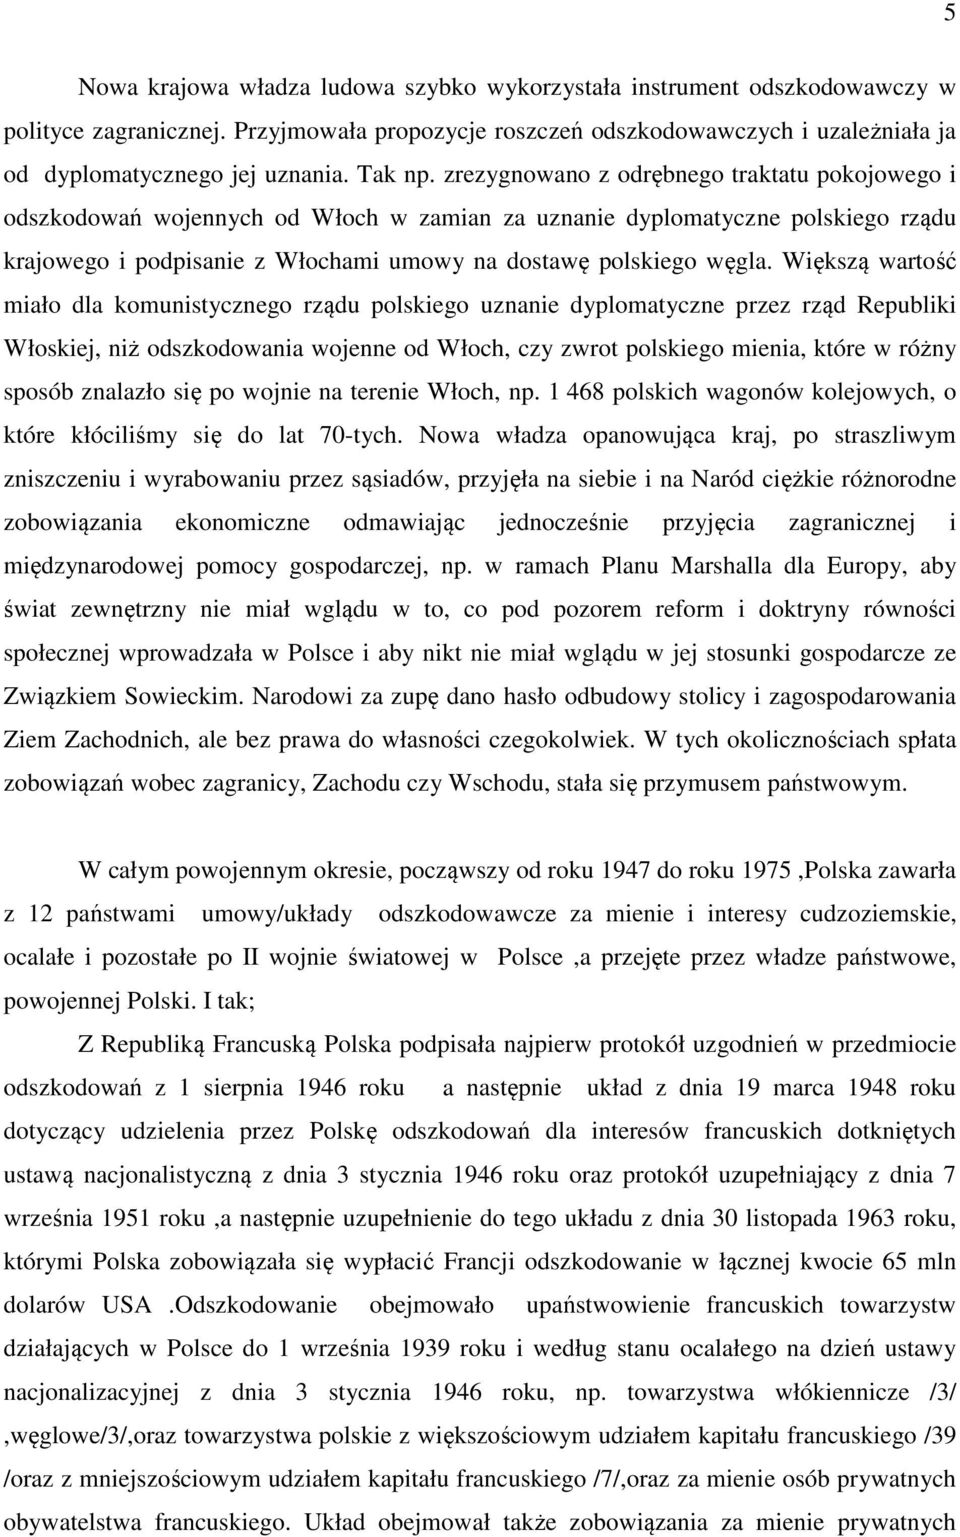 zrezygnowano z odrębnego traktatu pokojowego i odszkodowań wojennych od Włoch w zamian za uznanie dyplomatyczne polskiego rządu krajowego i podpisanie z Włochami umowy na dostawę polskiego węgla.